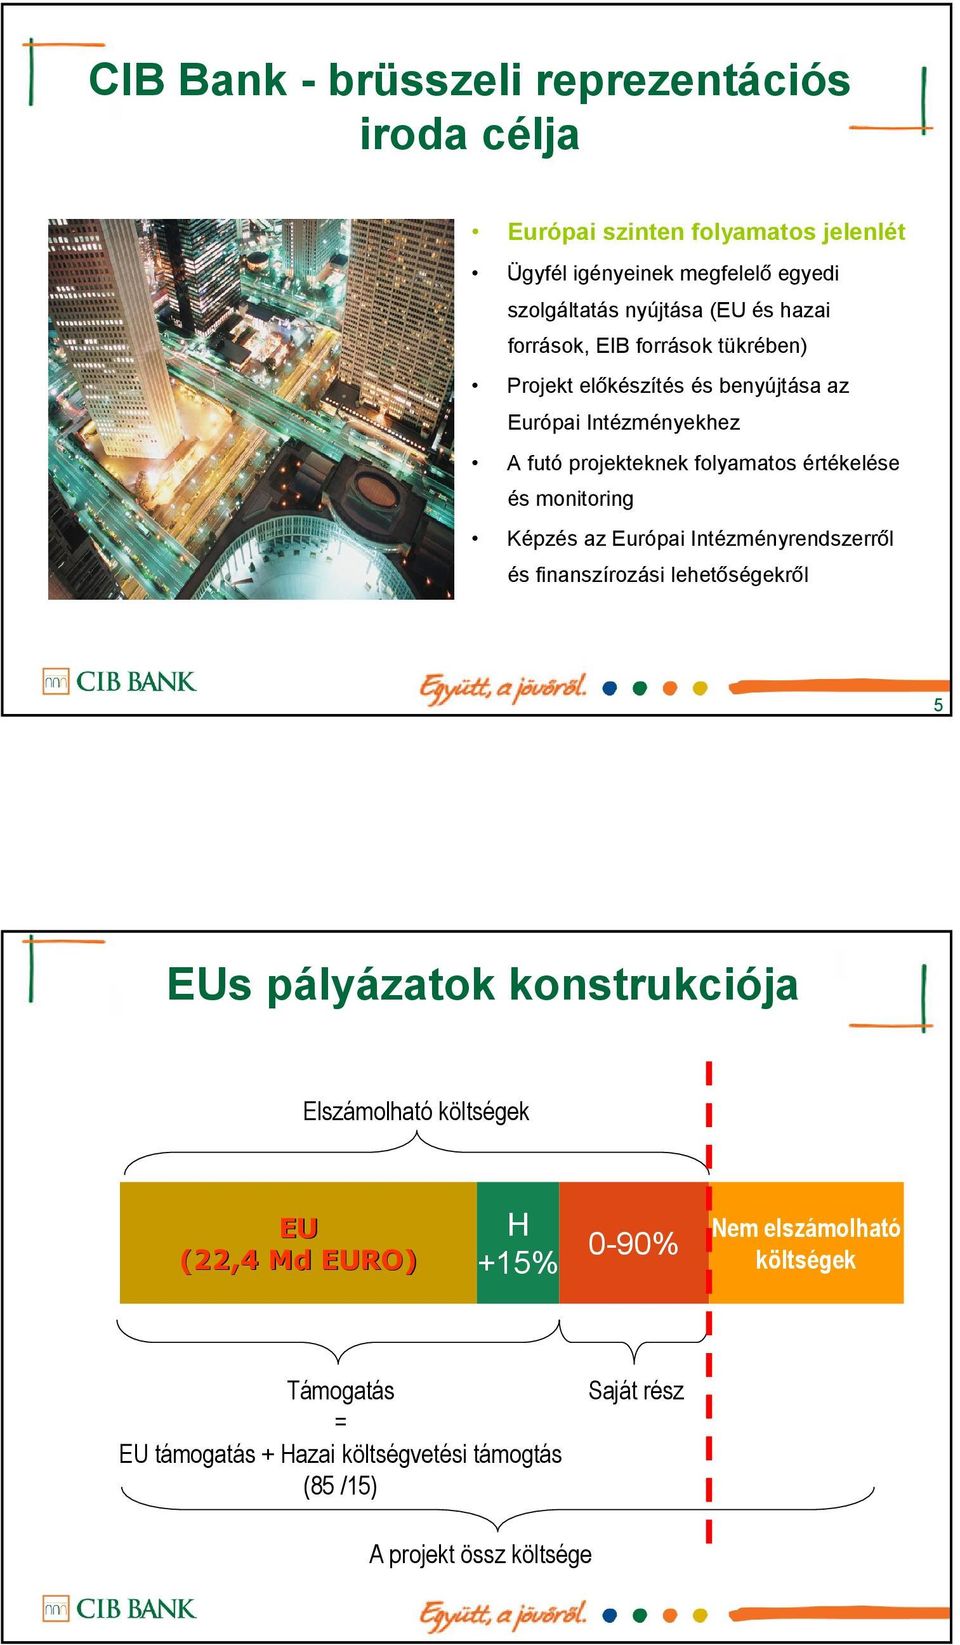 monitoring Képzés az Európai Intézményrendszerről és finanszírozási lehetőségekről 5 EUs pályázatok konstrukciója Elszámolható költségek EU (22,4